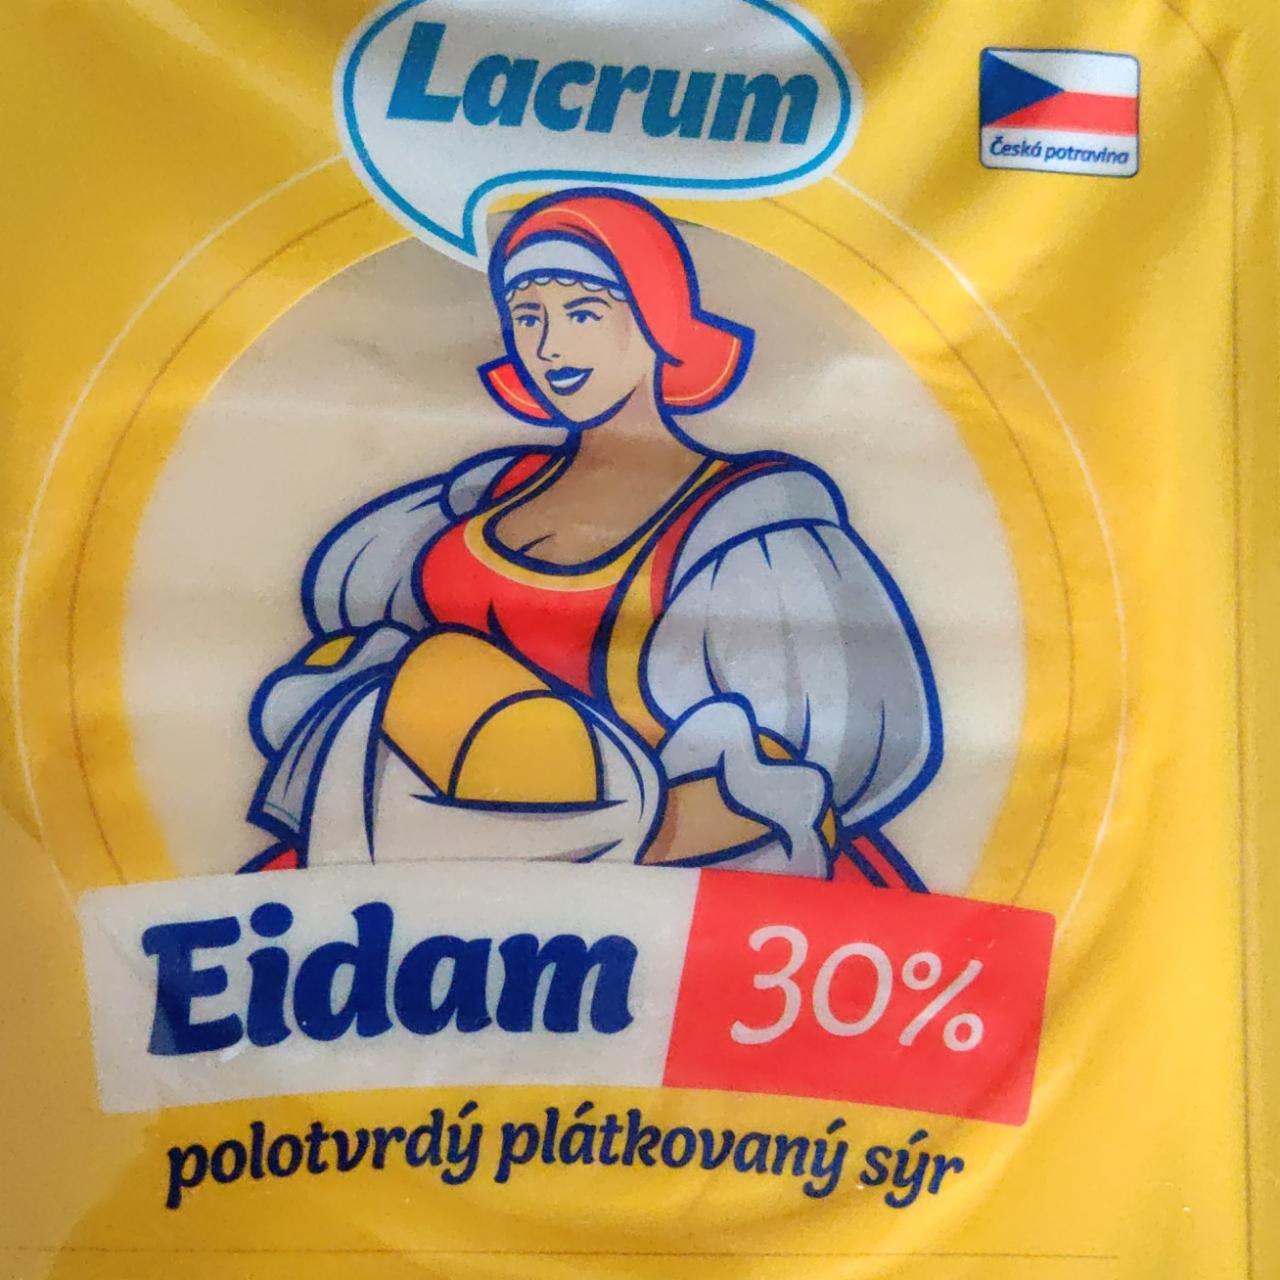 Fotografie - Eidam 30% polotvrdý plátkový sýr Lacrum